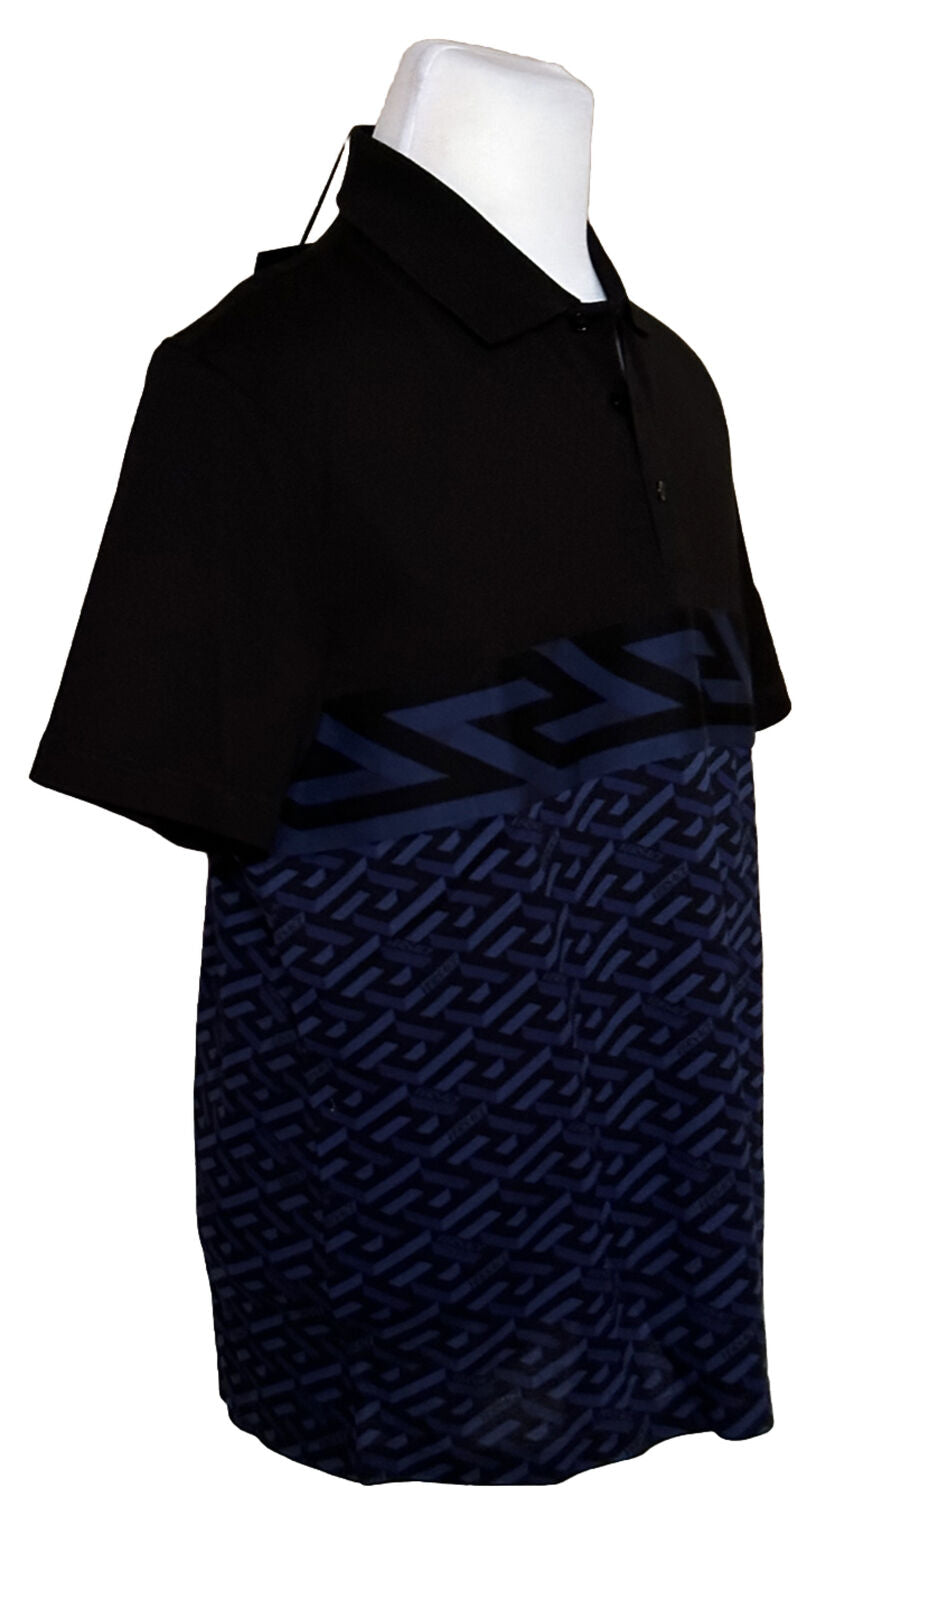 NWT $900 Versace Piquet Greca Signature Синяя/Черная рубашка-поло 2XL 1006468 Италия